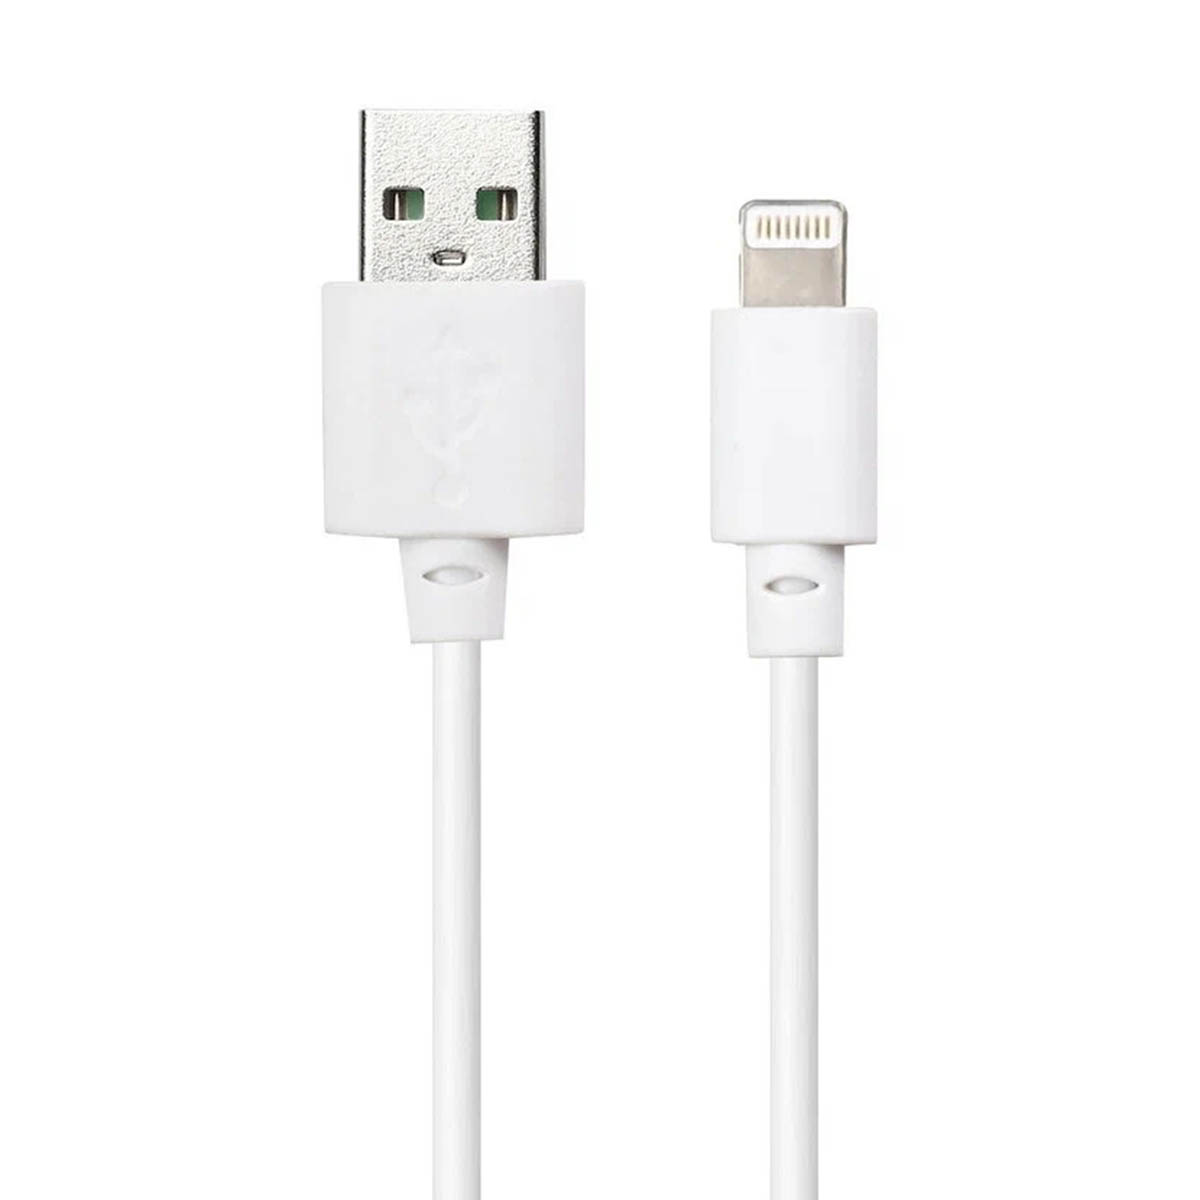 USB кабель BUDI для Lightning 8 pin модель M8J011L20-WHT, длина 20 cм, цвет белый